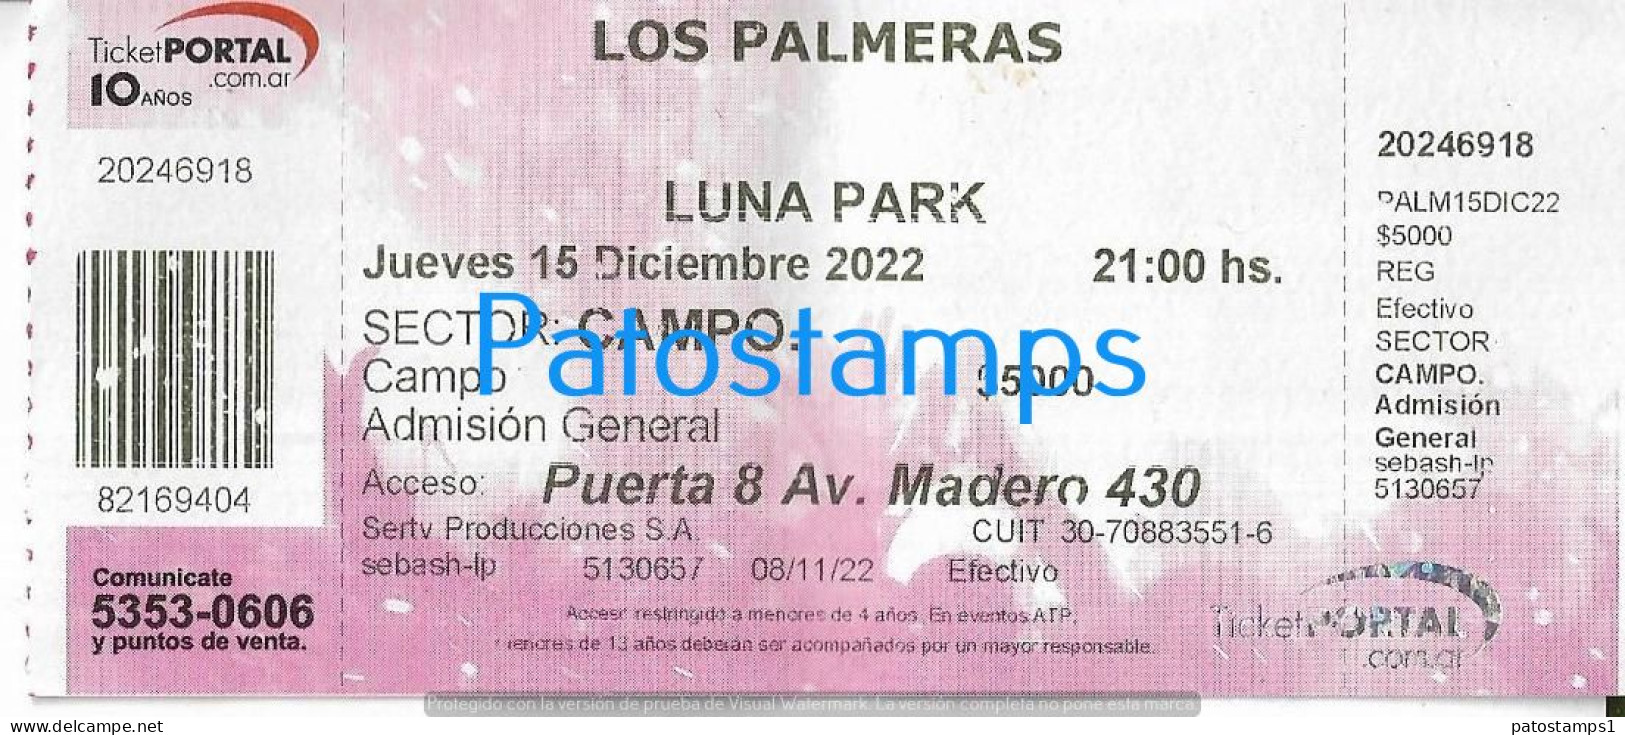 228822 ARTIST LOS PALMERAS ARGENTINA CUMBIA IN LUNA PARK AÑO 2022 ENTRADA TICKET NO POSTAL POSTCARD - Tickets - Vouchers